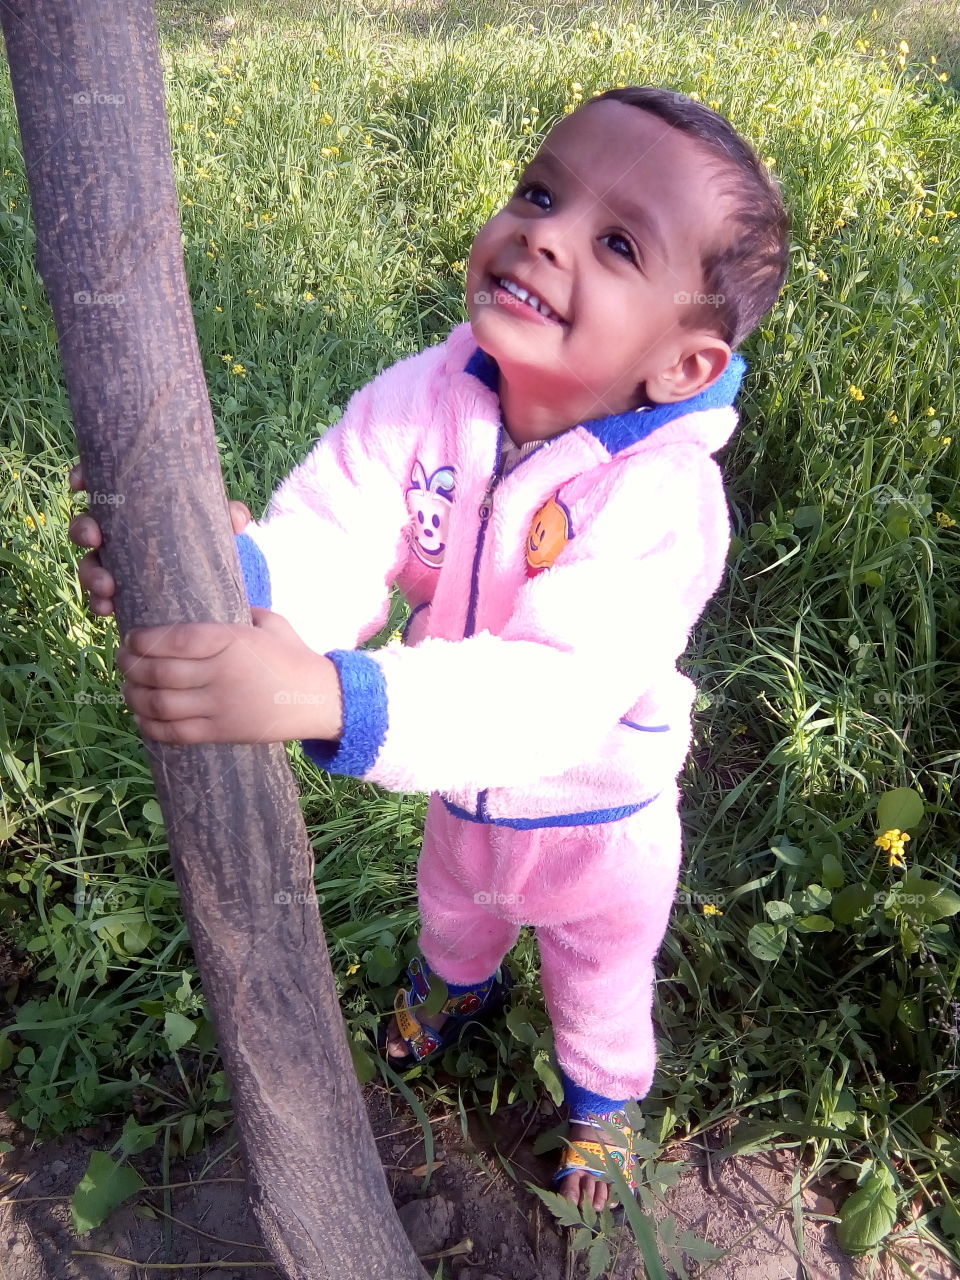 A little boy in a field in happy moments.